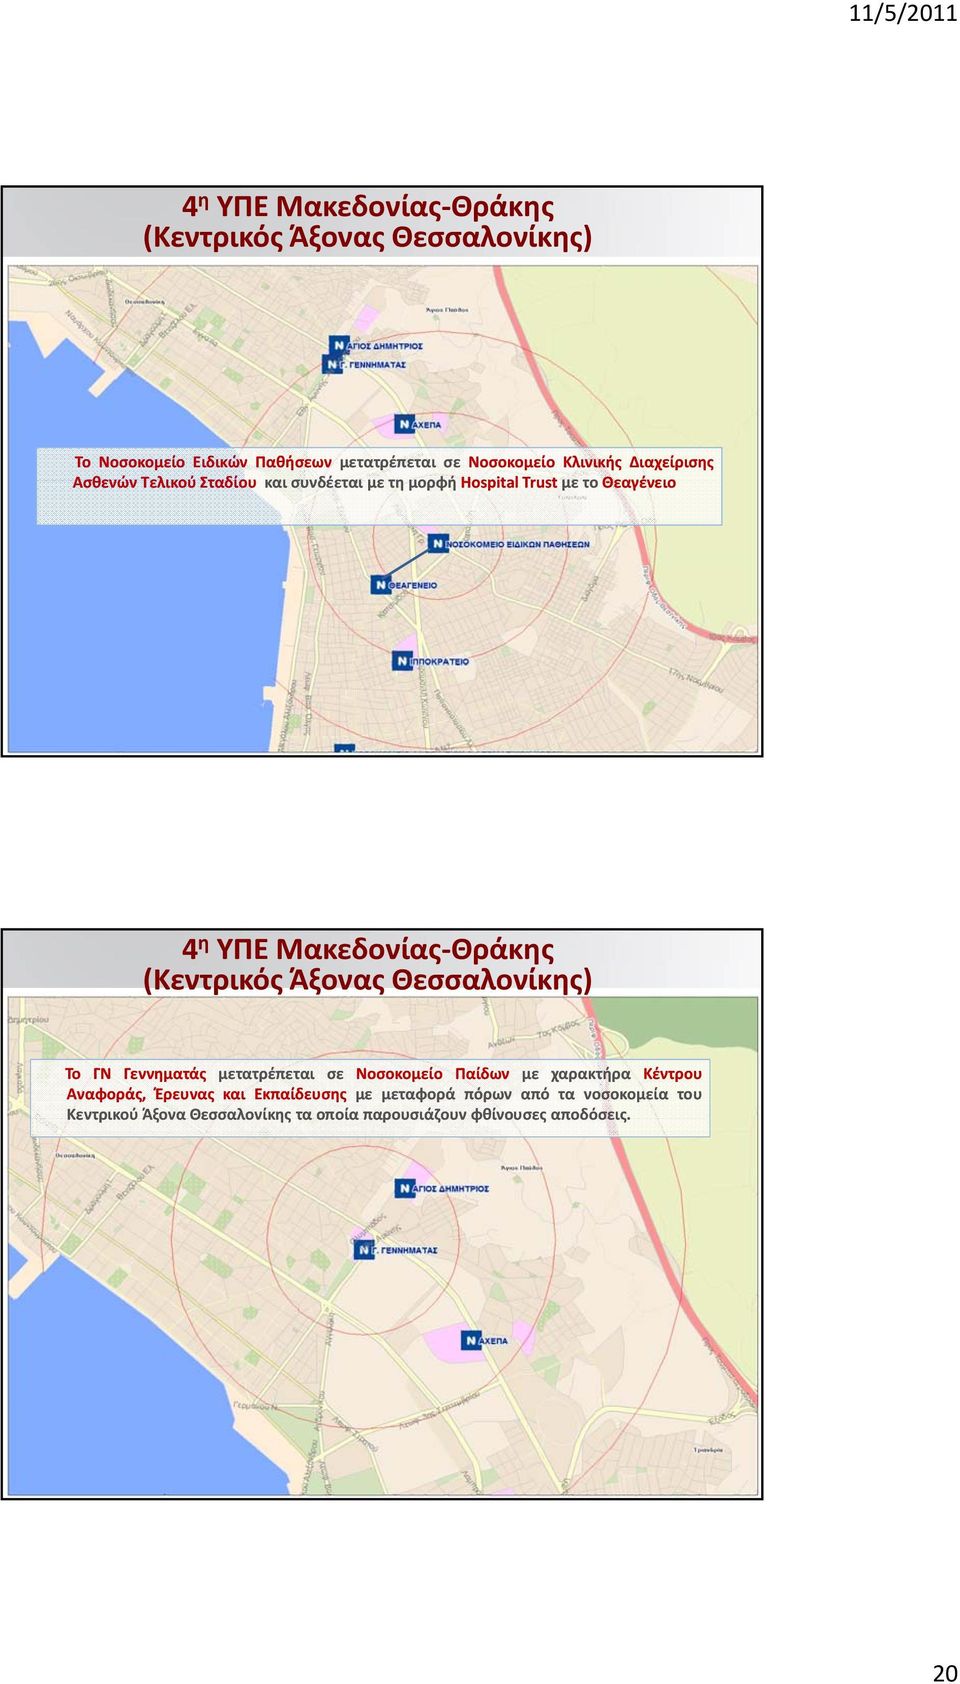 Θεσσαλονίκης) Το Γ Γεννηματάς μετατρέπεται σε οσοκομείο Παίδων με χαρακτήρα Κέντρου Αναφοράς, Έρευνας και